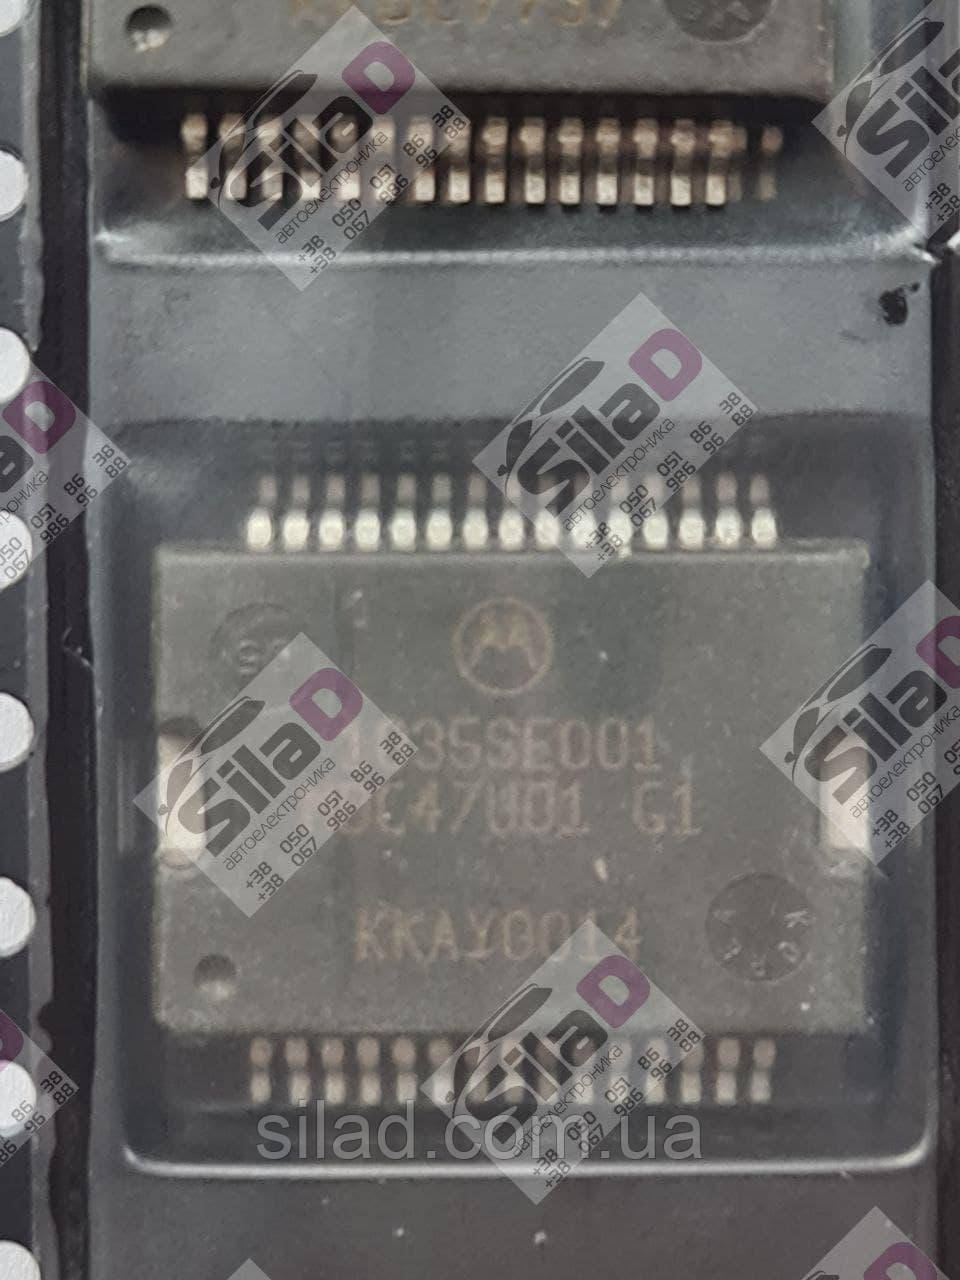 Микросхема 1035SE001 MDC47U01 G1 Motorola корпус SSOP-30